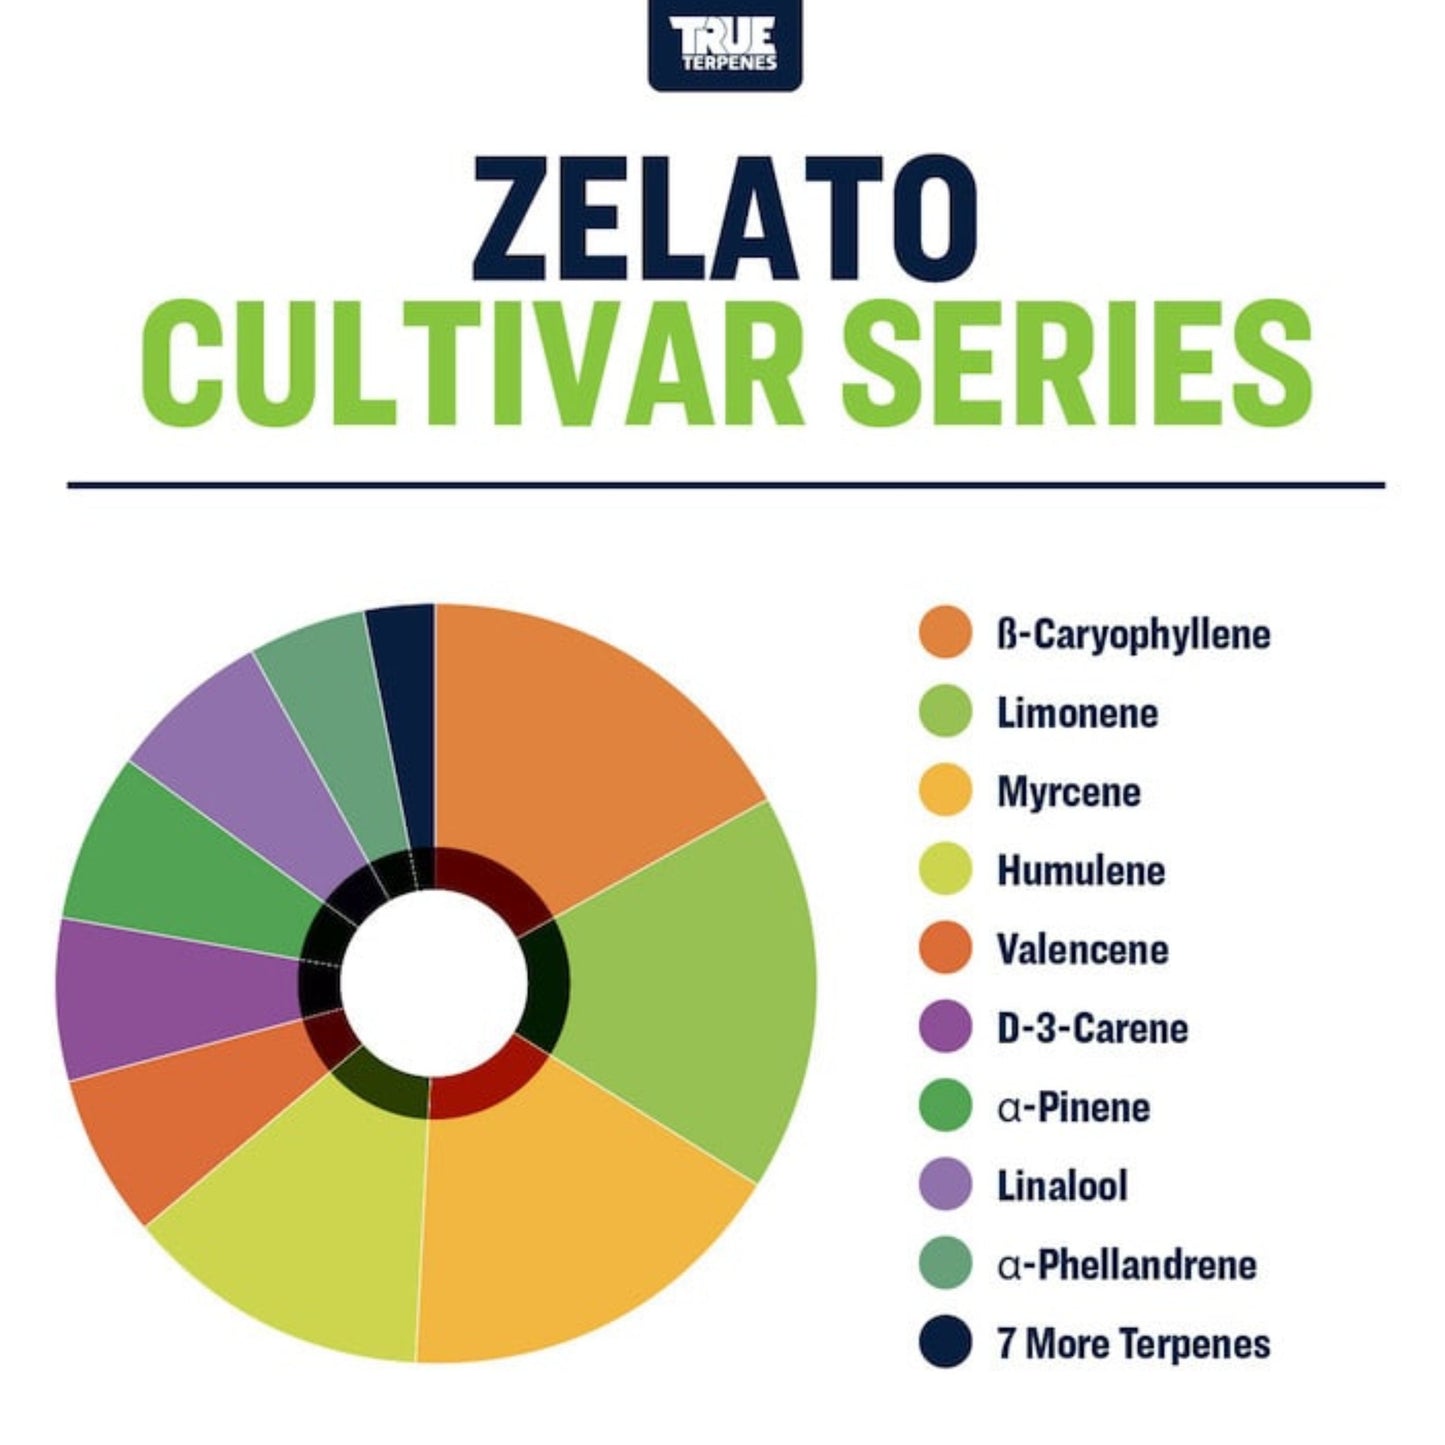 True Terpenes | Zelato 5ml